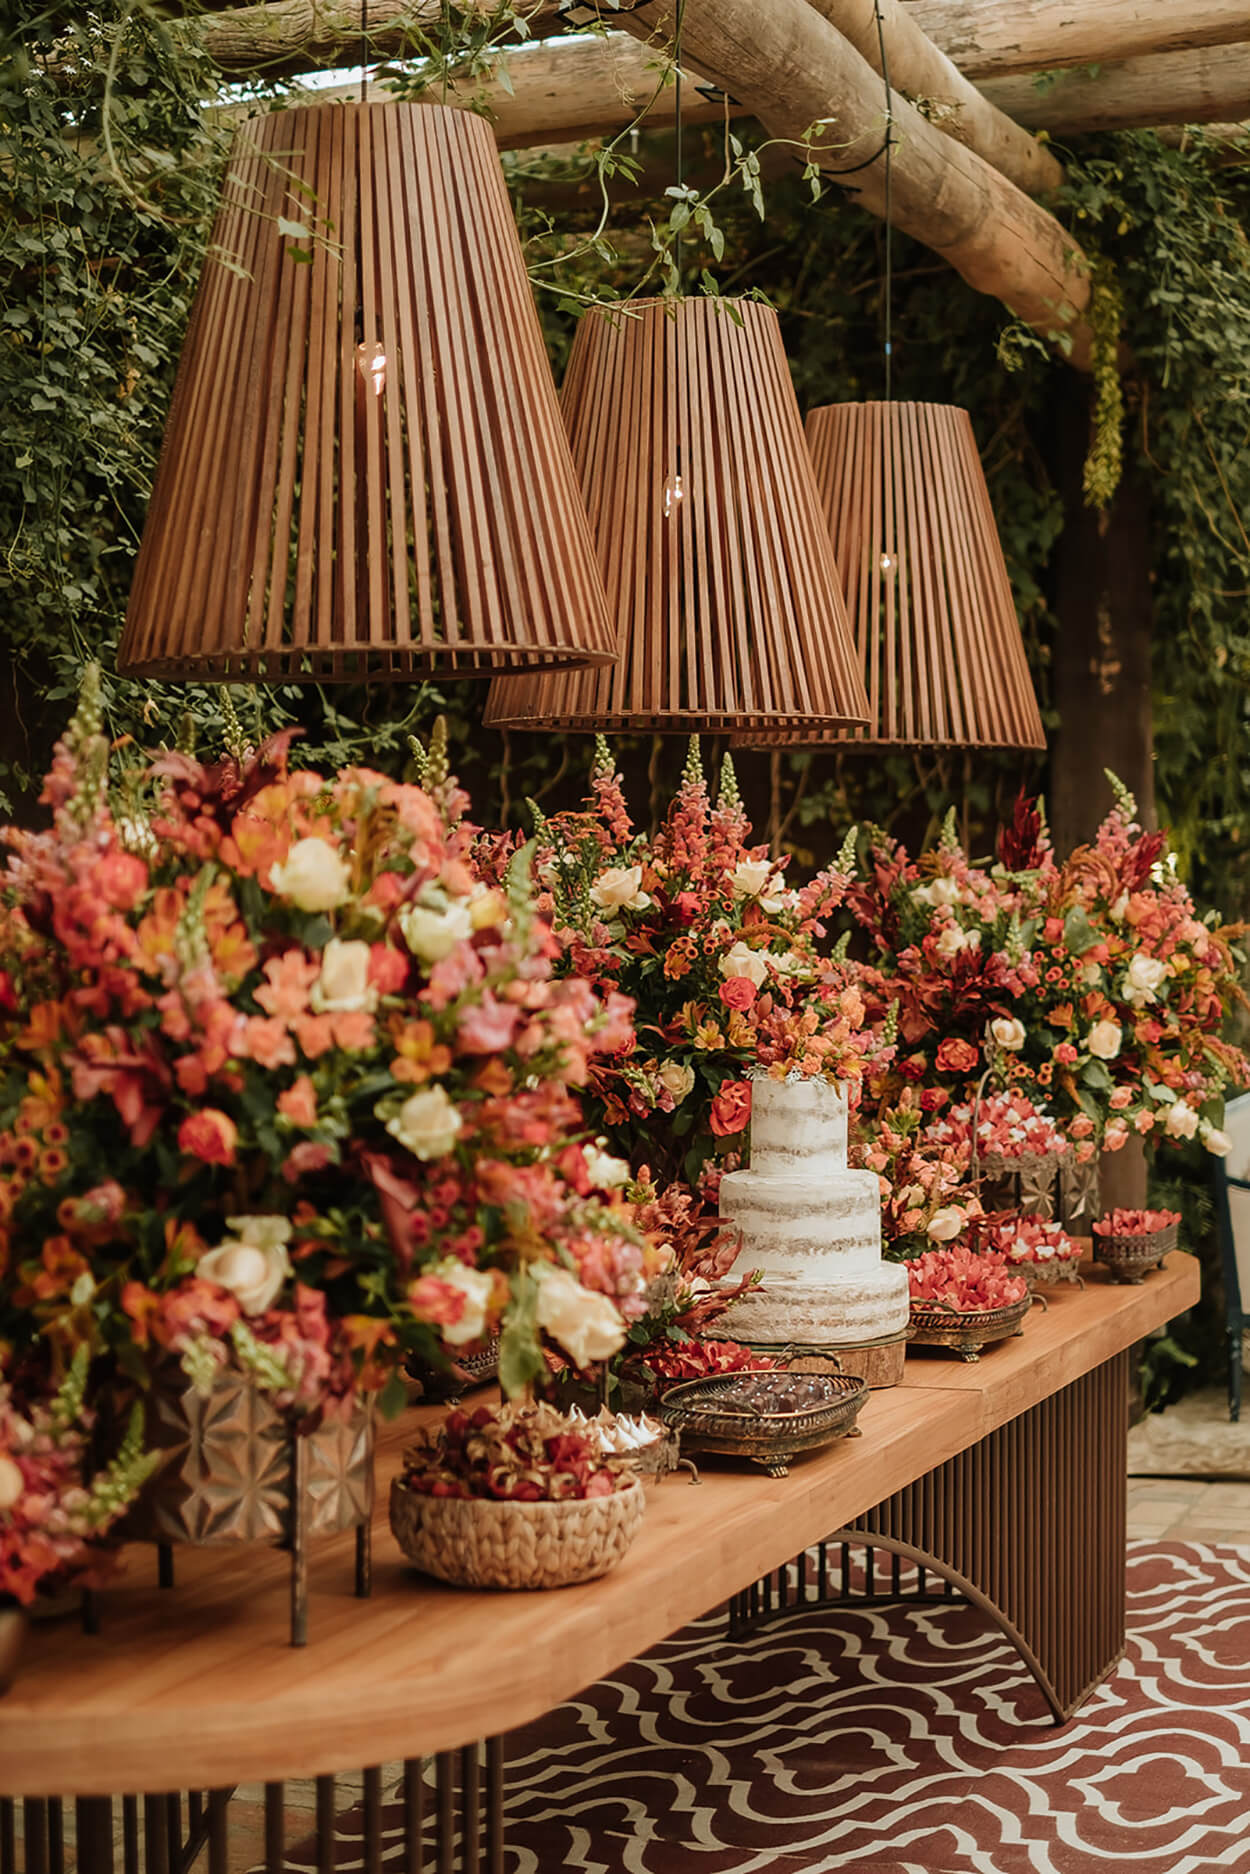 salão rústico com mesa de madeira com bolo de casamento semi espatulado e arranjos com flores terracota e bandeja com doces e três luminárias rusticas